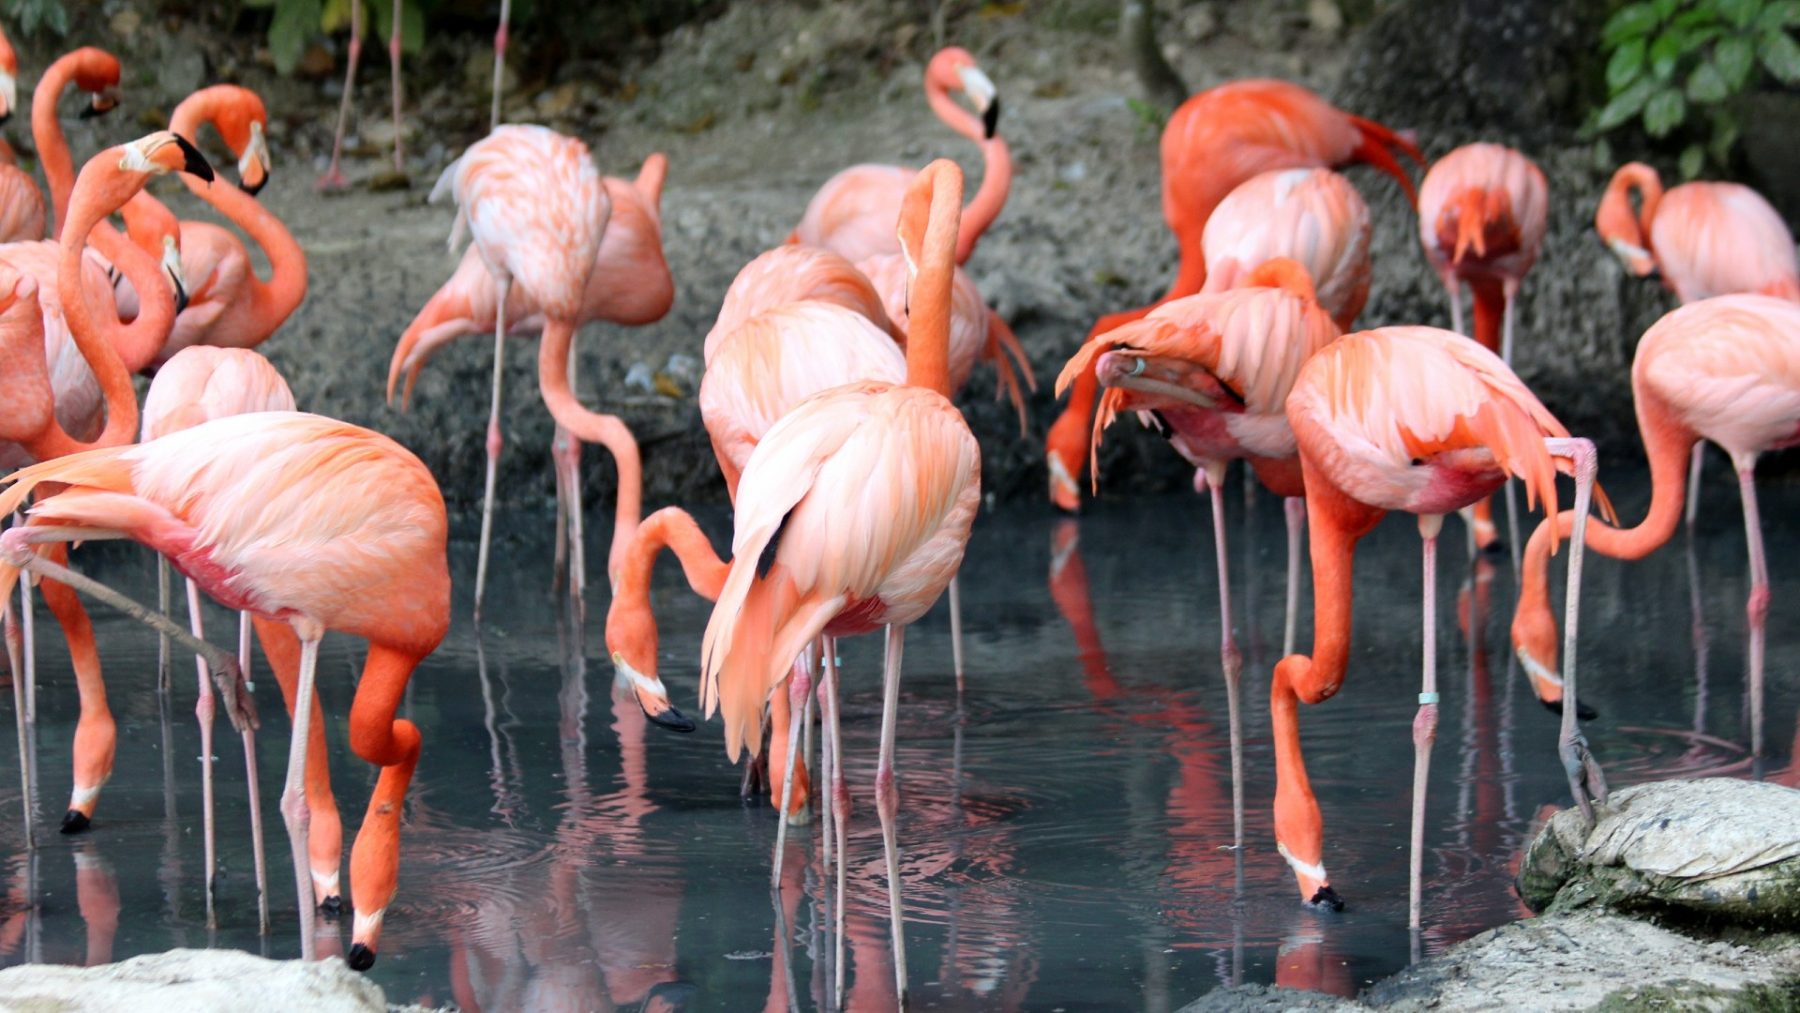 Beschuit met roze muisjes: eerste flamingo-kuikens uit ei gekropen in Diergaarde Blijdorp